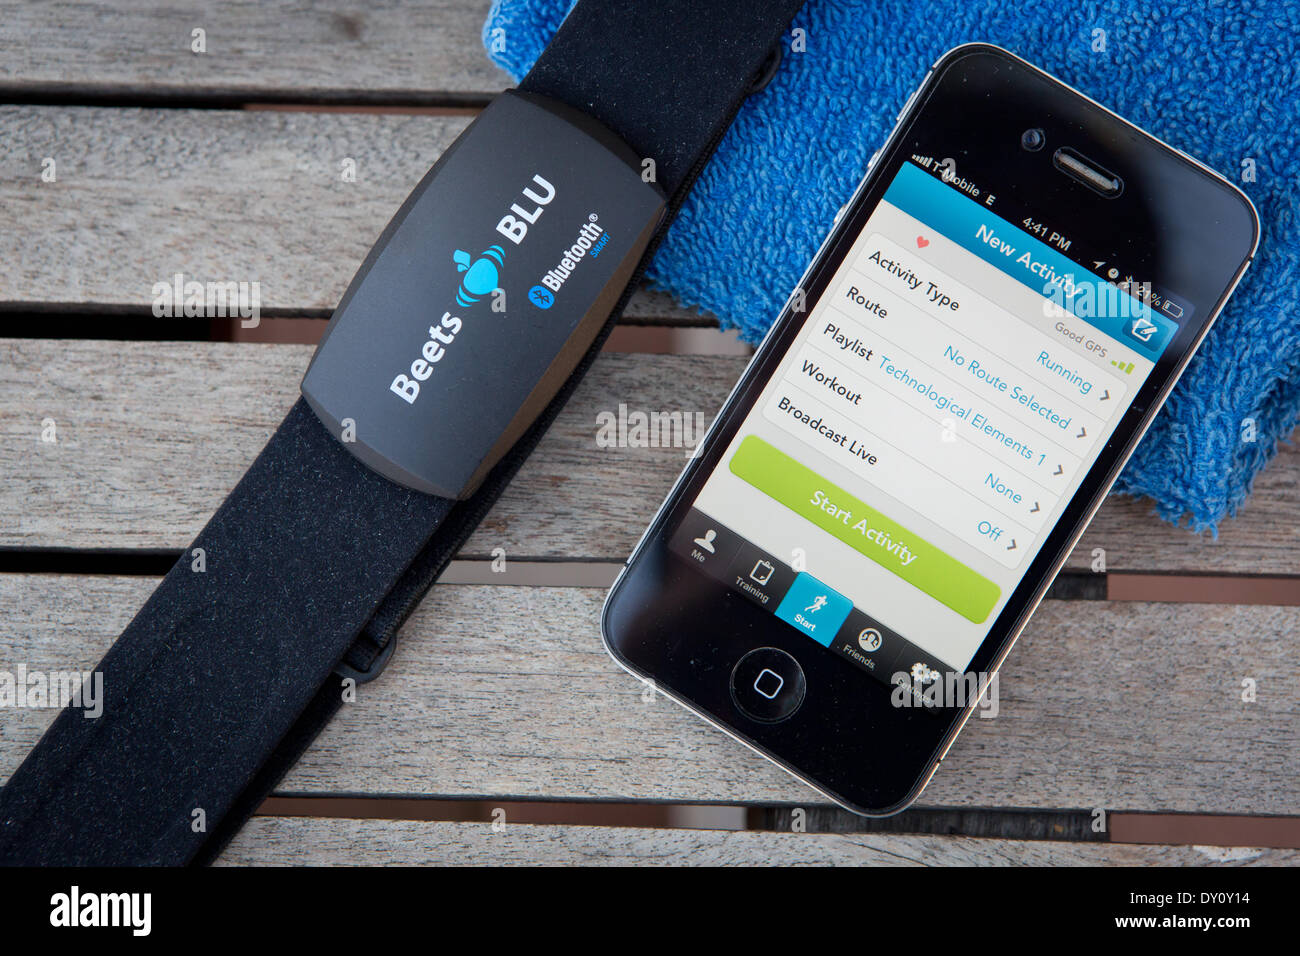 Die Rüben BLU-Herzfrequenz-Monitor überträgt die Herzfrequenz über Bluetooth  auf das iPhone, wo eine app wie Runkeeper die Daten protokolliert.  Pulsmesser mit Brustgurt, im März 2014 Stockfotografie - Alamy